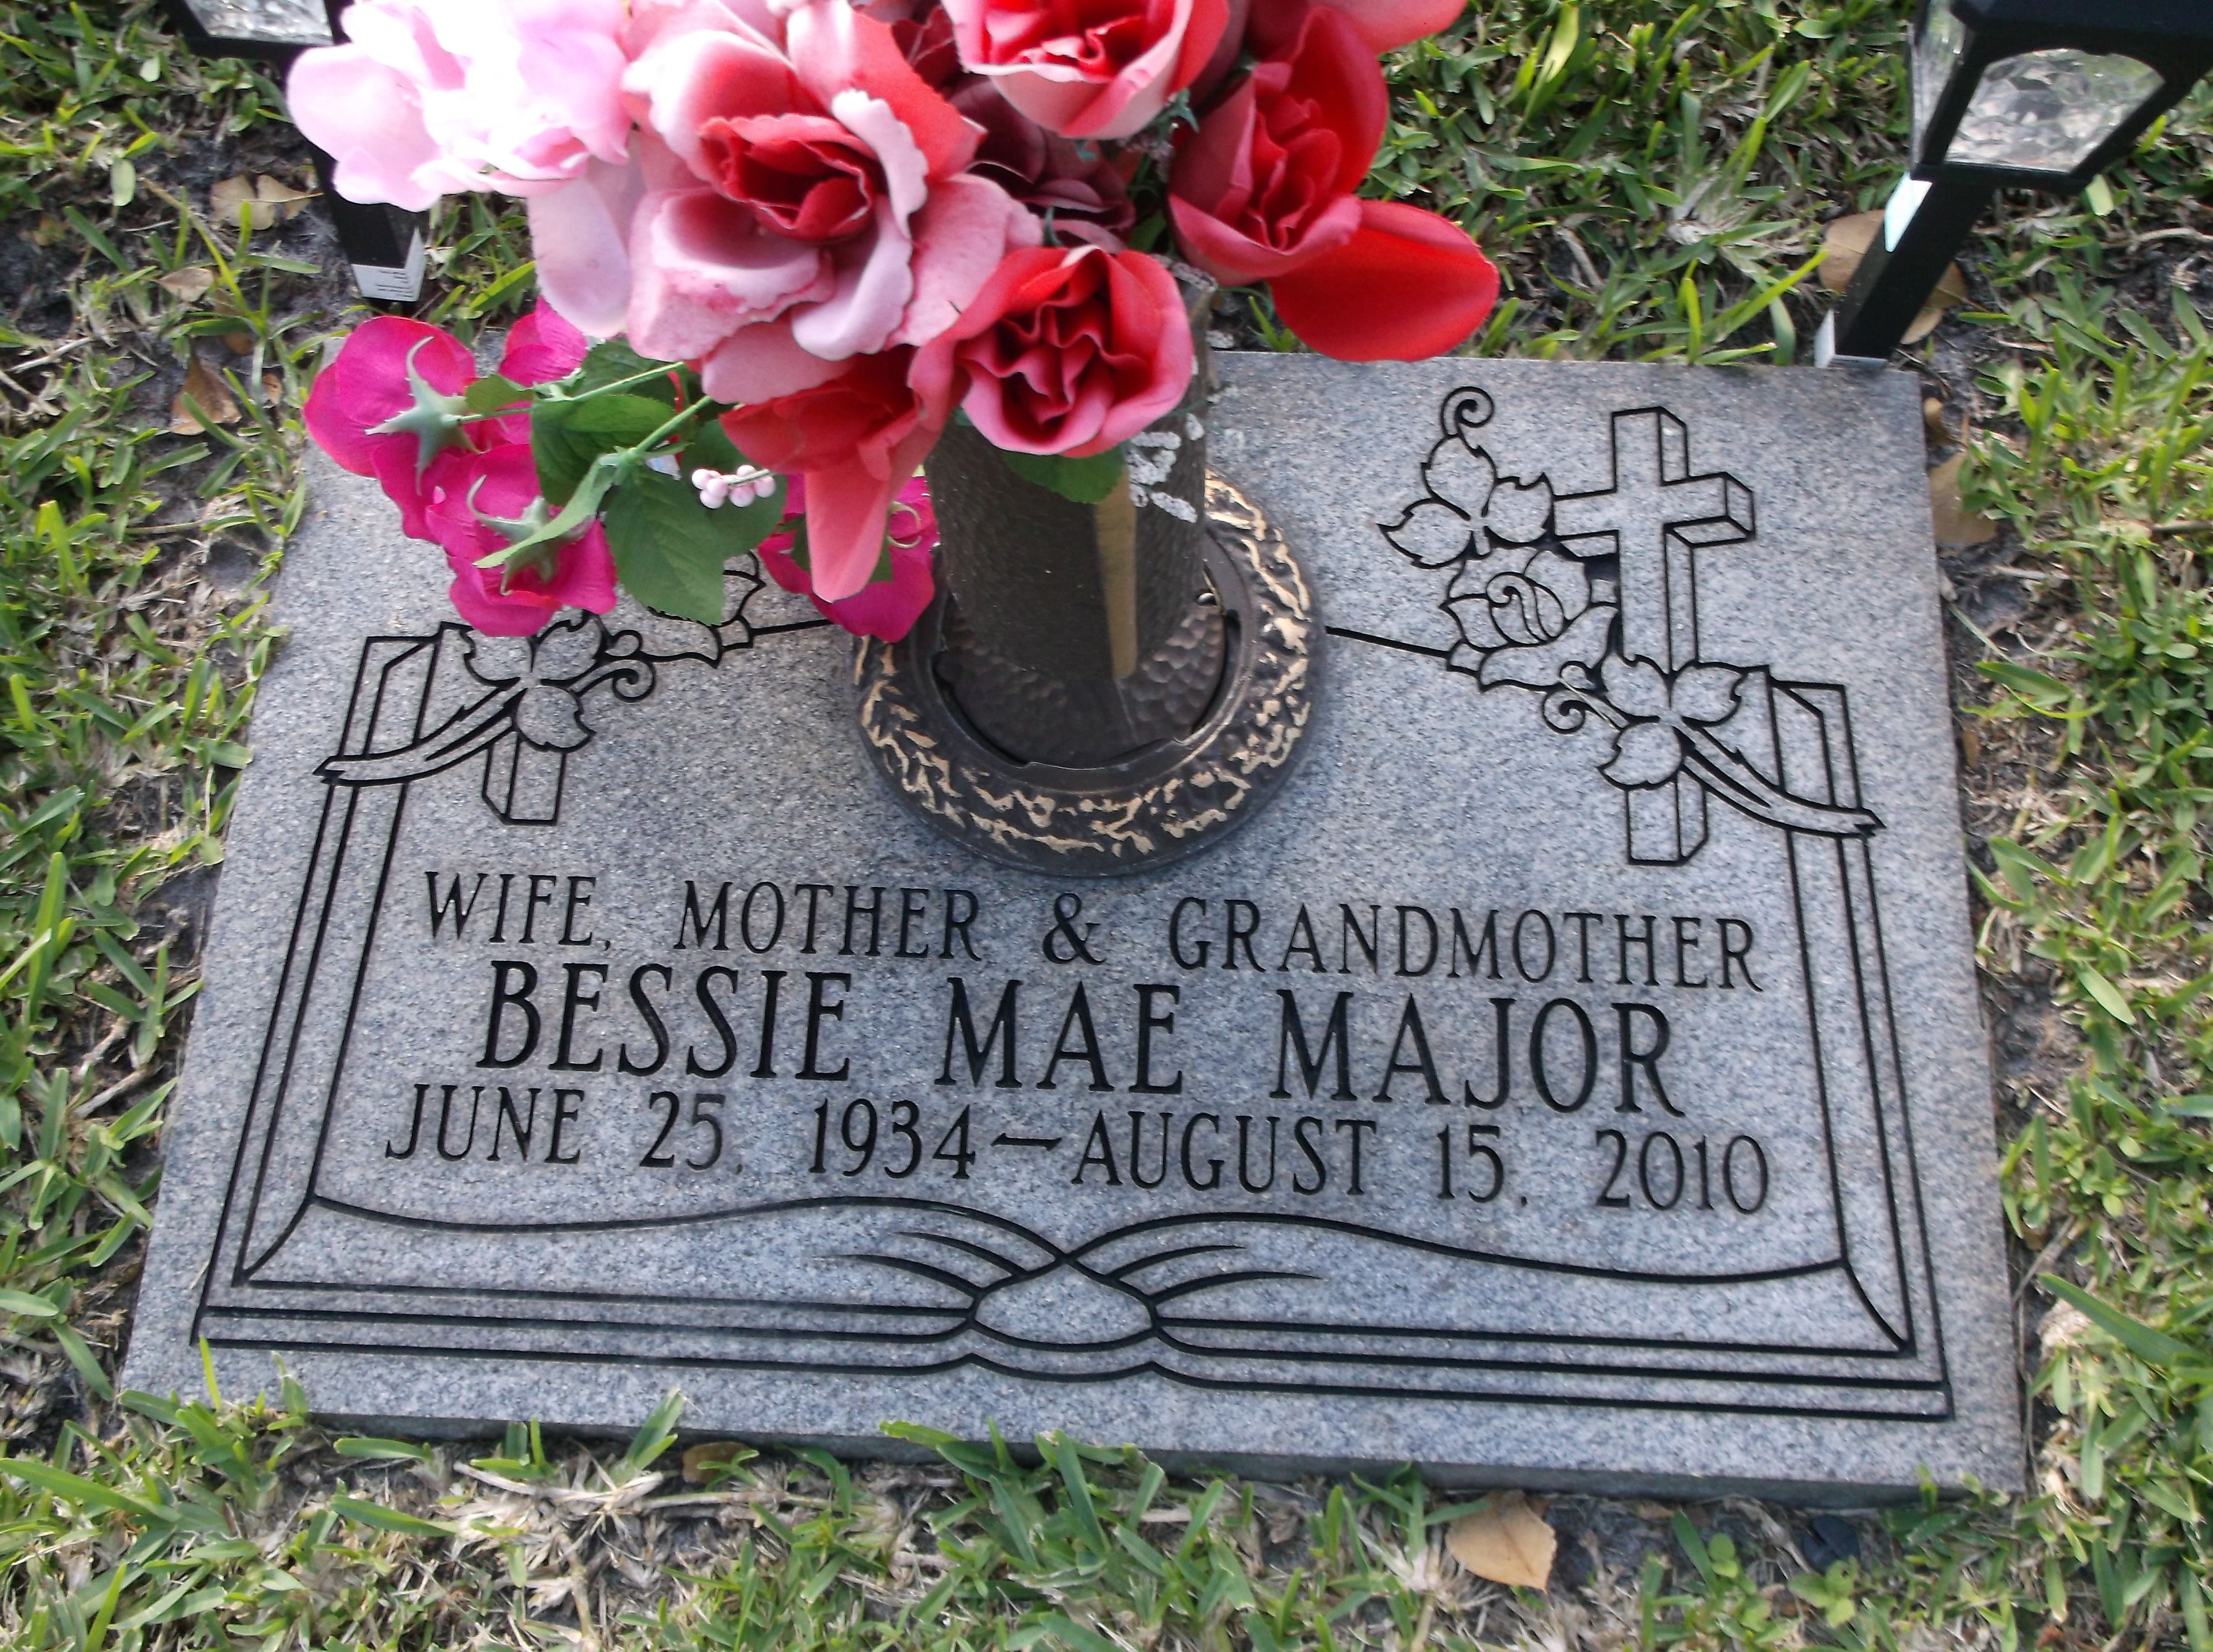 Bessie Mae Major